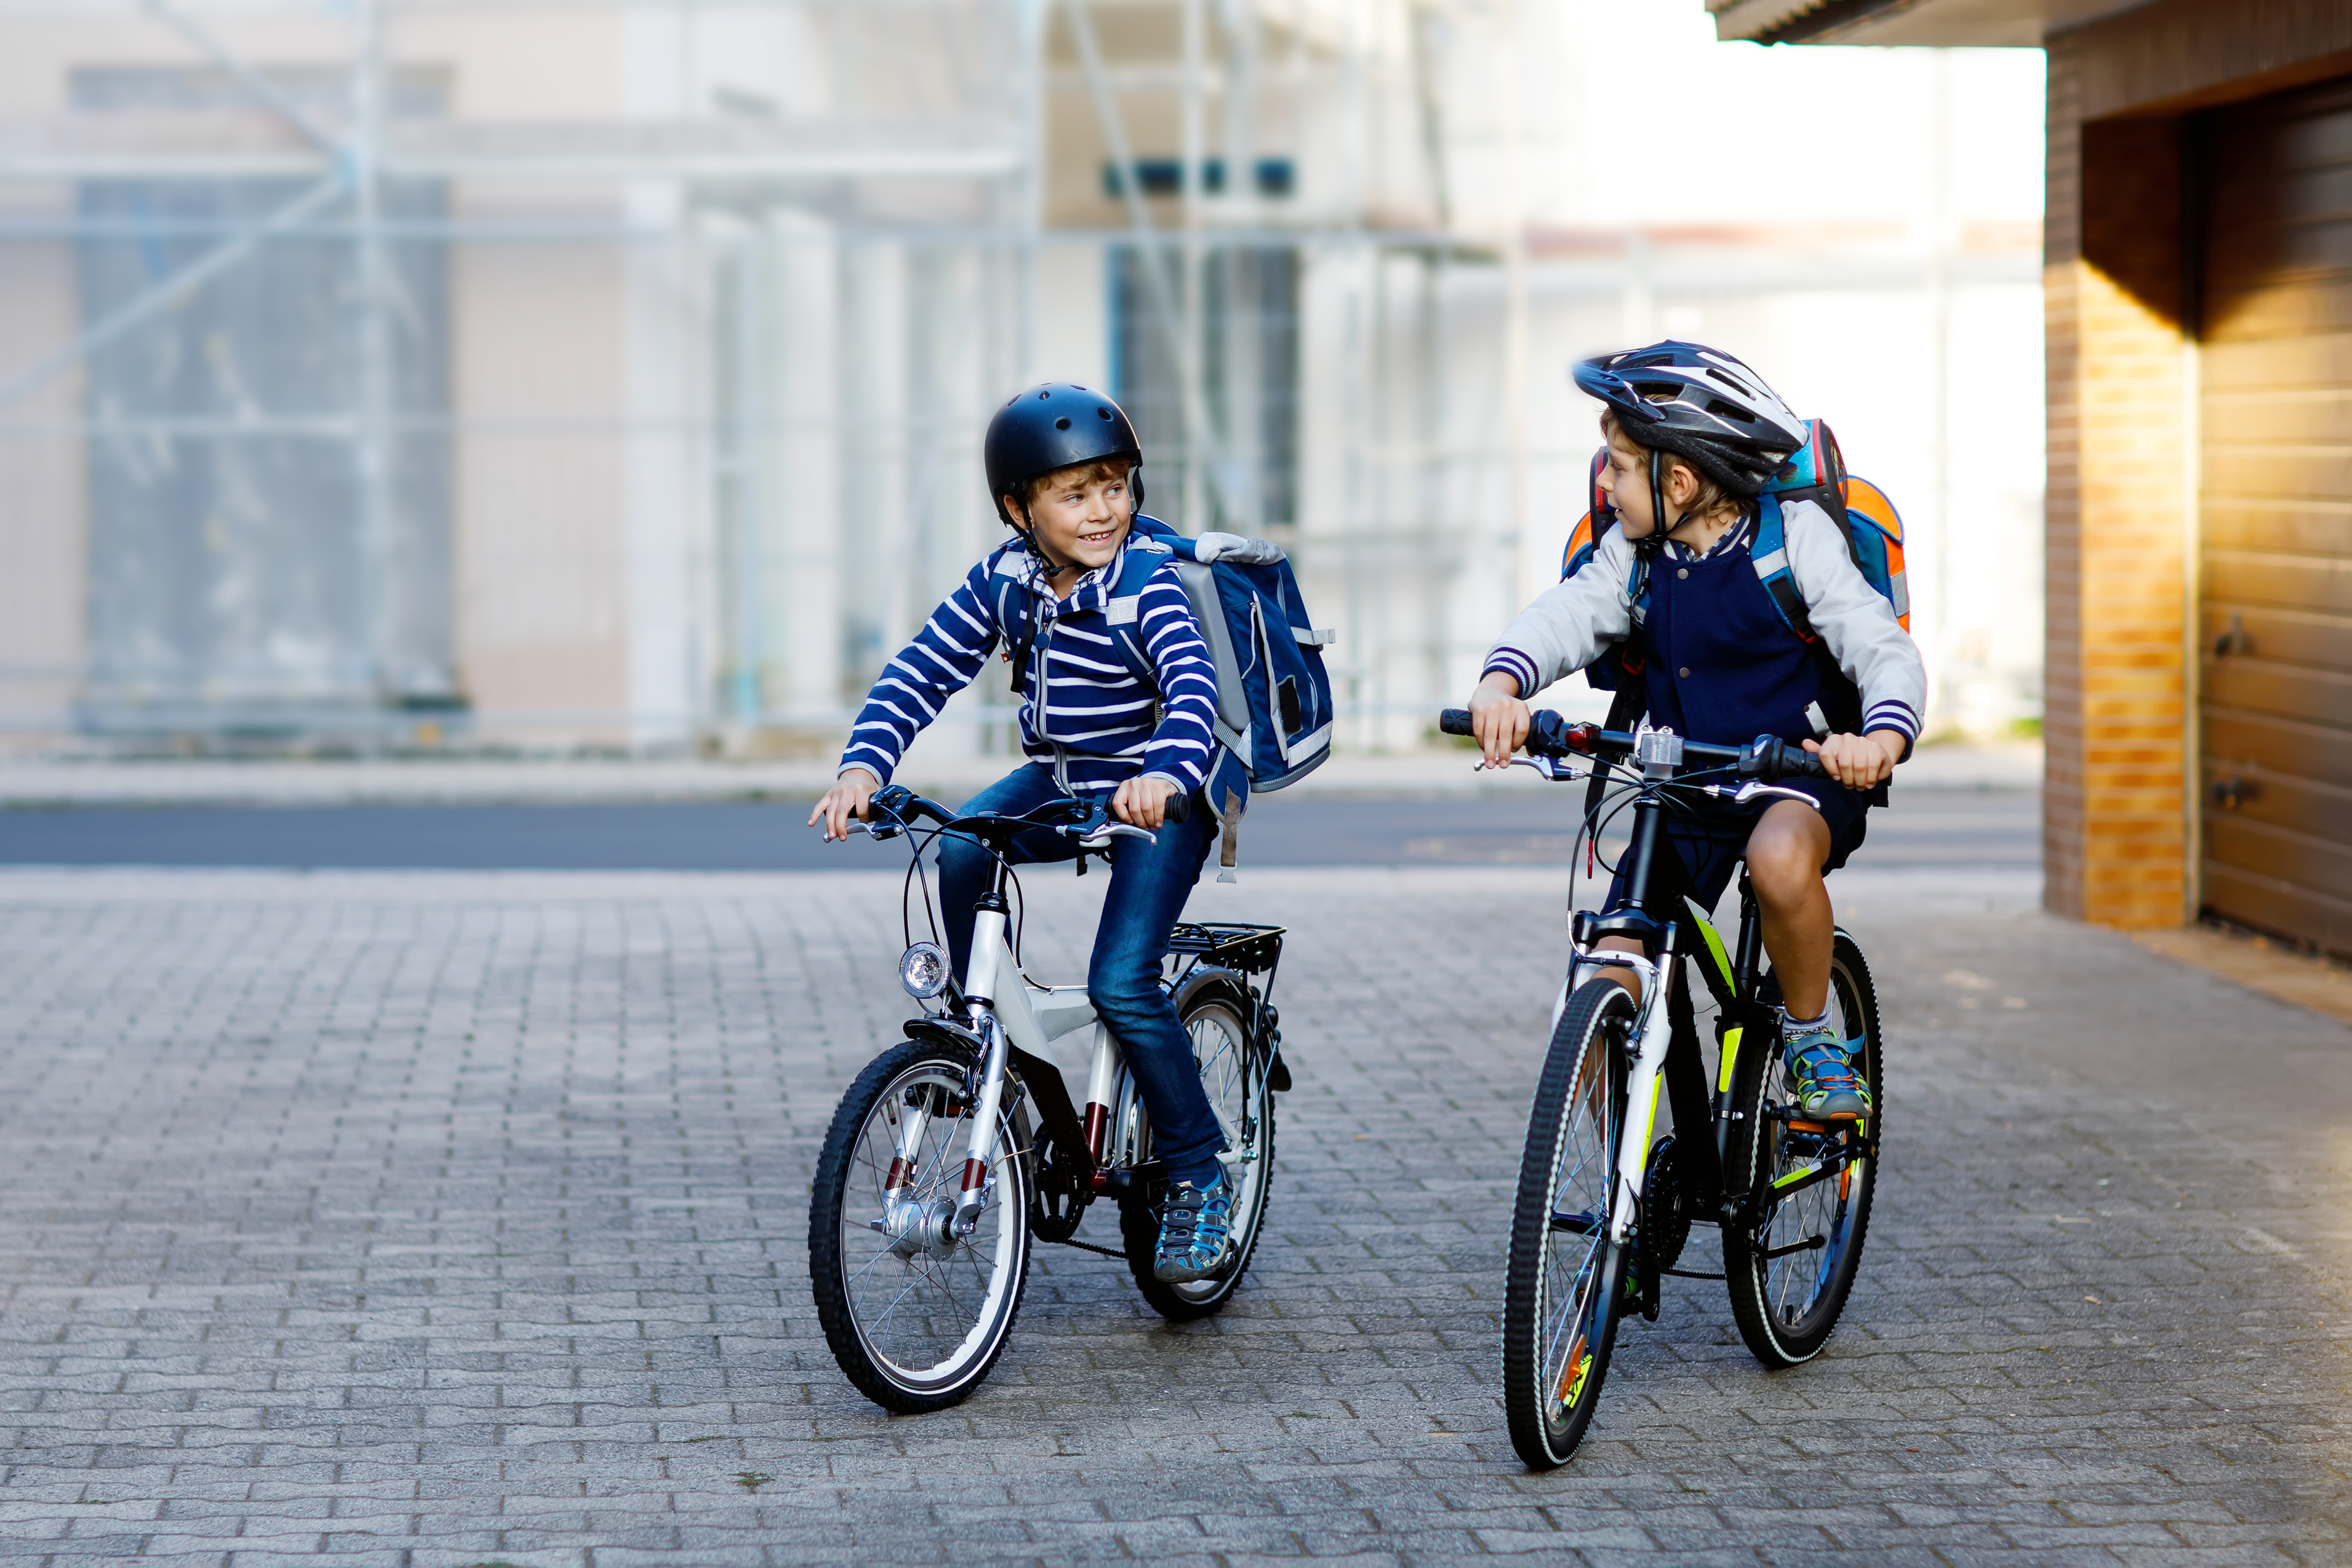 The children are riding bikes. Велосипедист подросток. Мальчишки на велосипедах. В школу на велосипеде. Подрости на велосипеде.